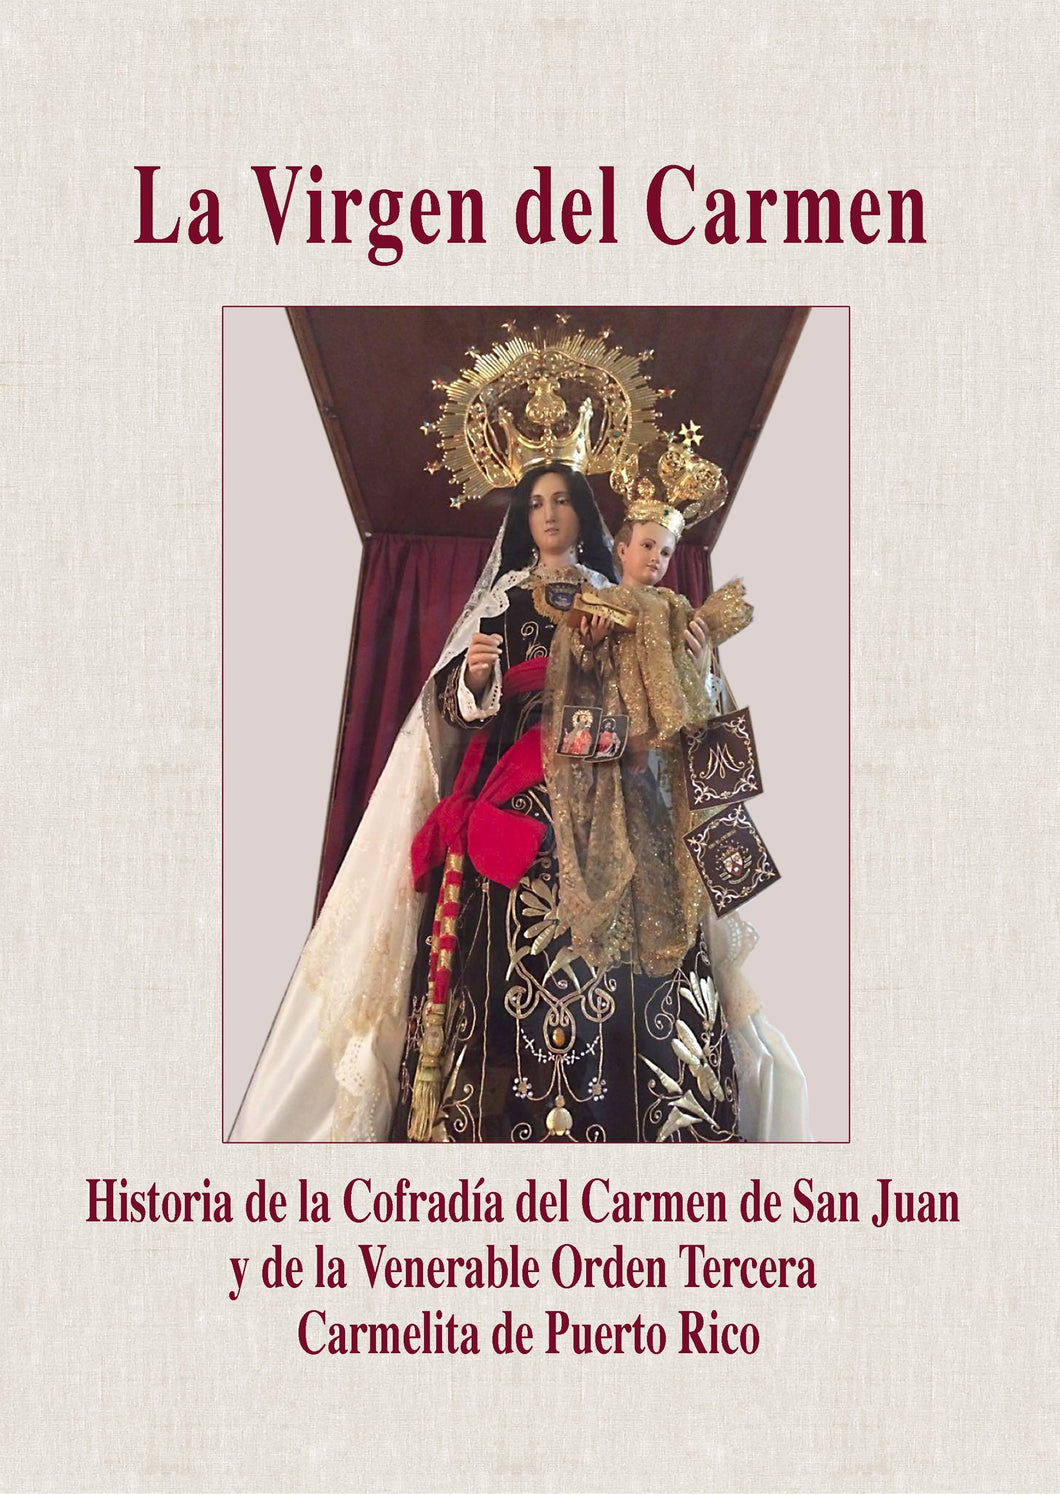 La Virgen del Carmen: Historia de la Cofradía del Carmen de San Juan y de la Venerable Orden Tercera Carmelita de Puerto Rico